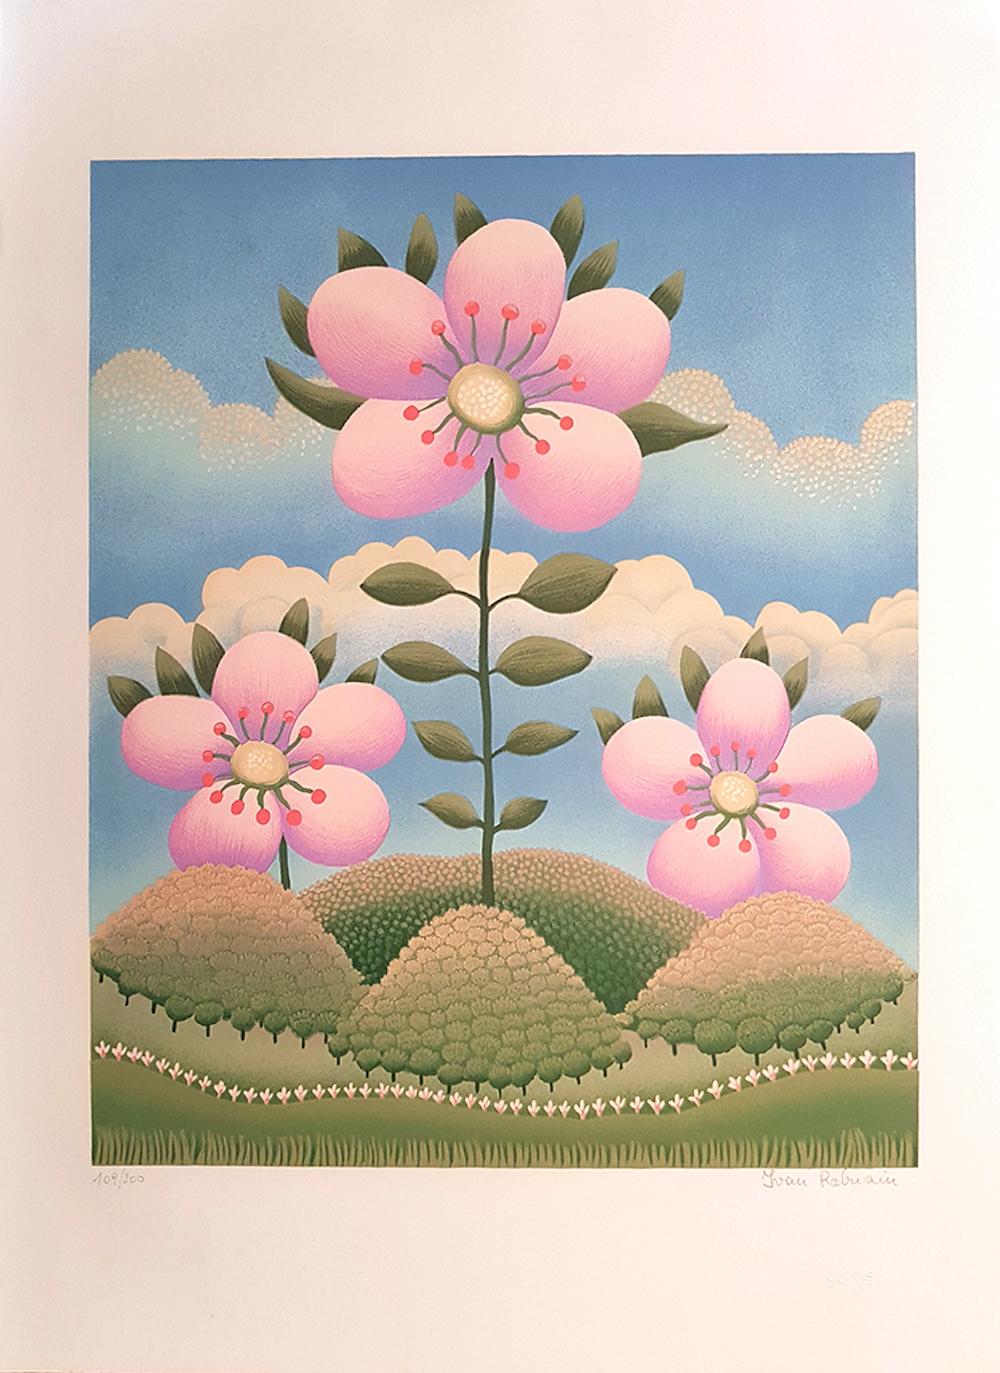 Ivan Rabuzin Figurative Print - Flower in the Landscape - Screen Print by I. Rabuzin - 1980